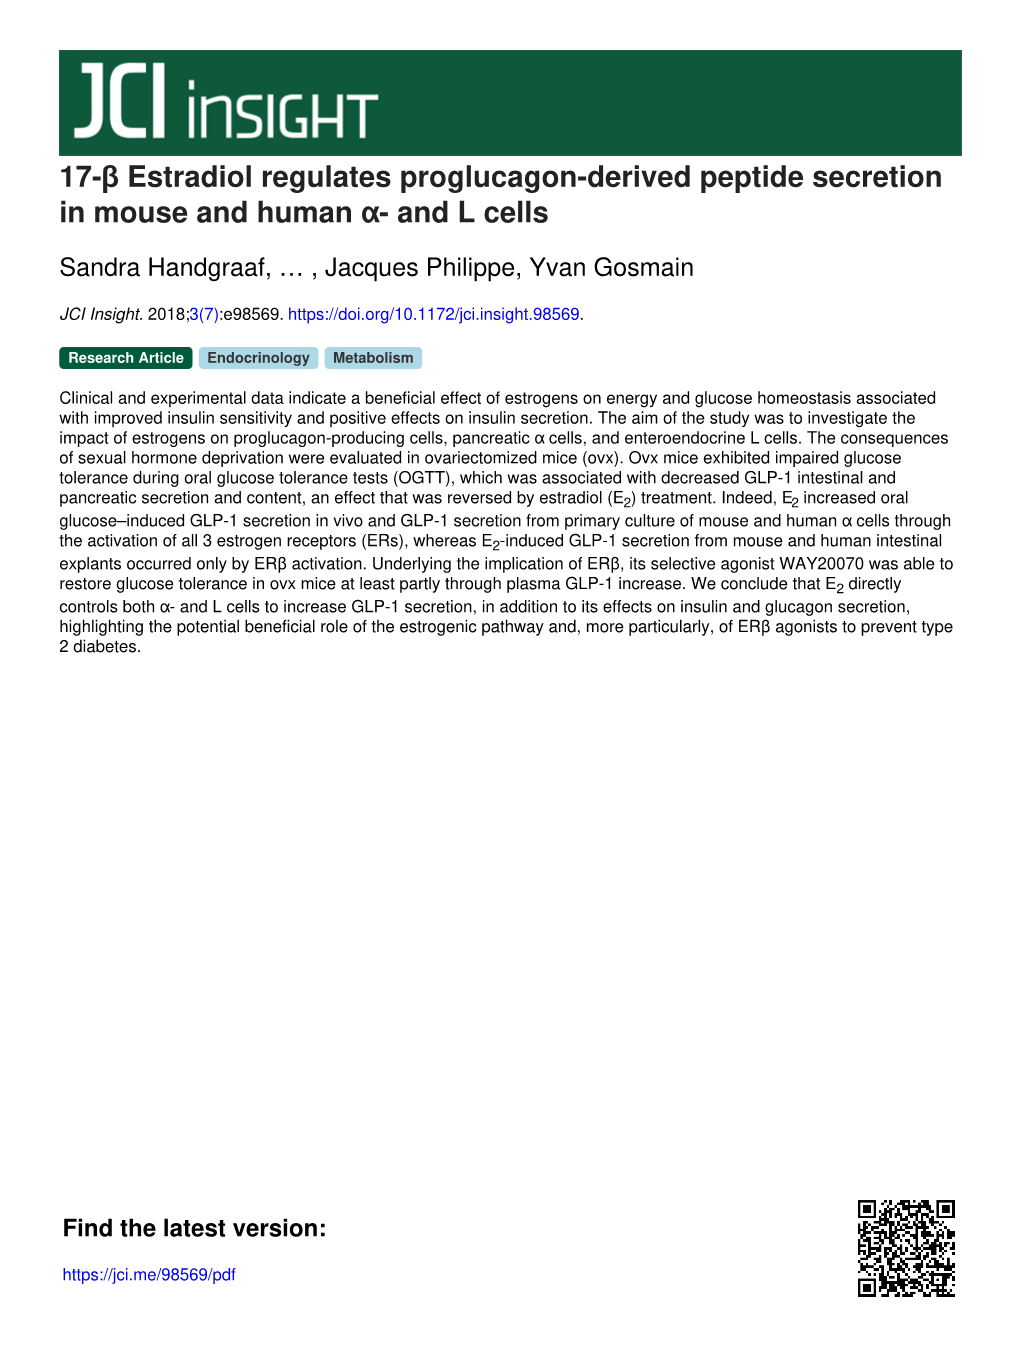 17-Β Estradiol Regulates Proglucagon-Derived Peptide Secretion in Mouse and Human Α- and L Cells